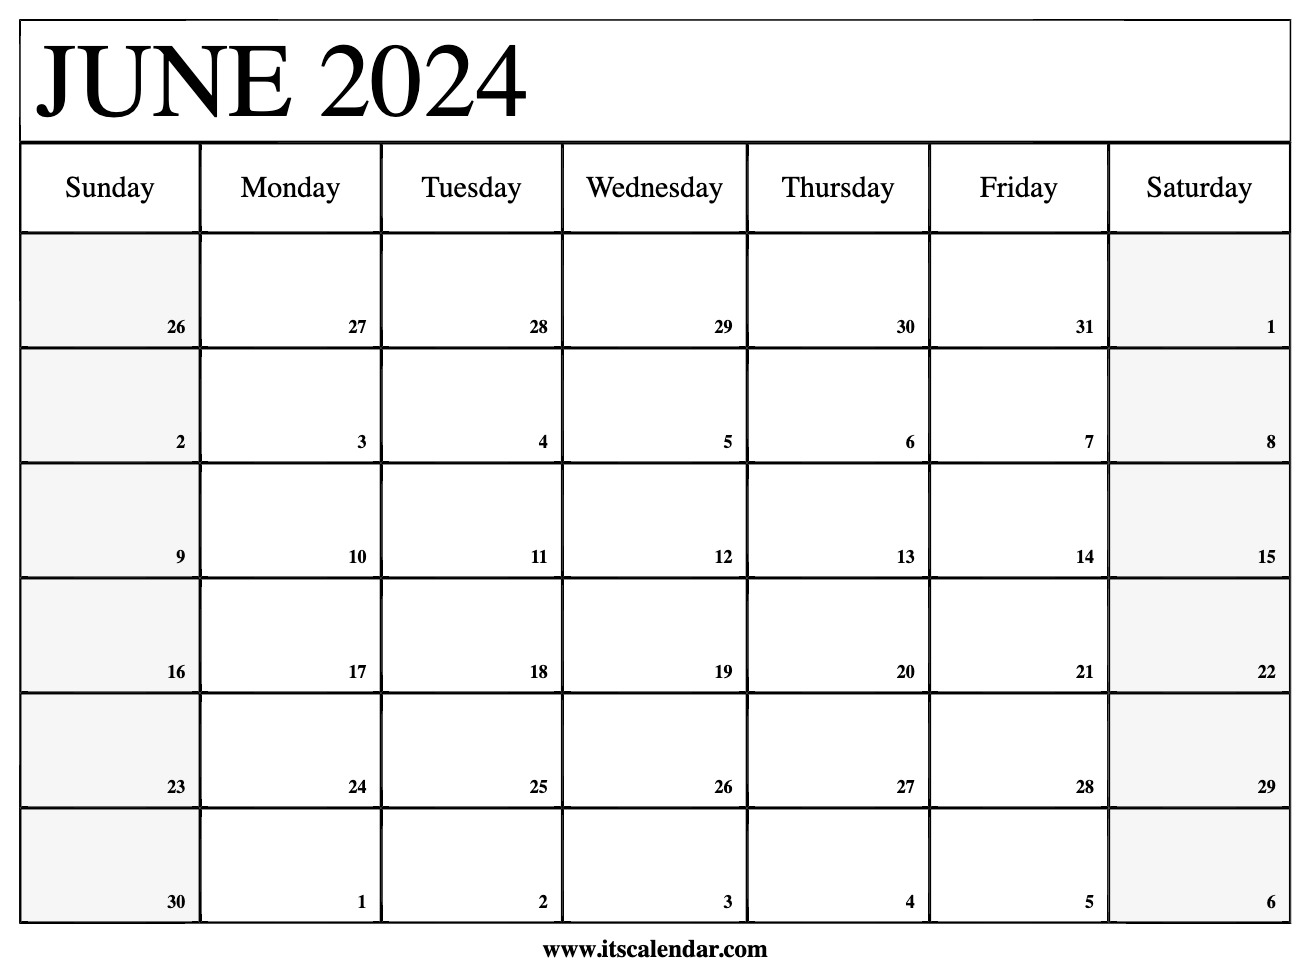 download-printable-june-2024-calendars-june-2024-calendar-free-printable-calendar-printable